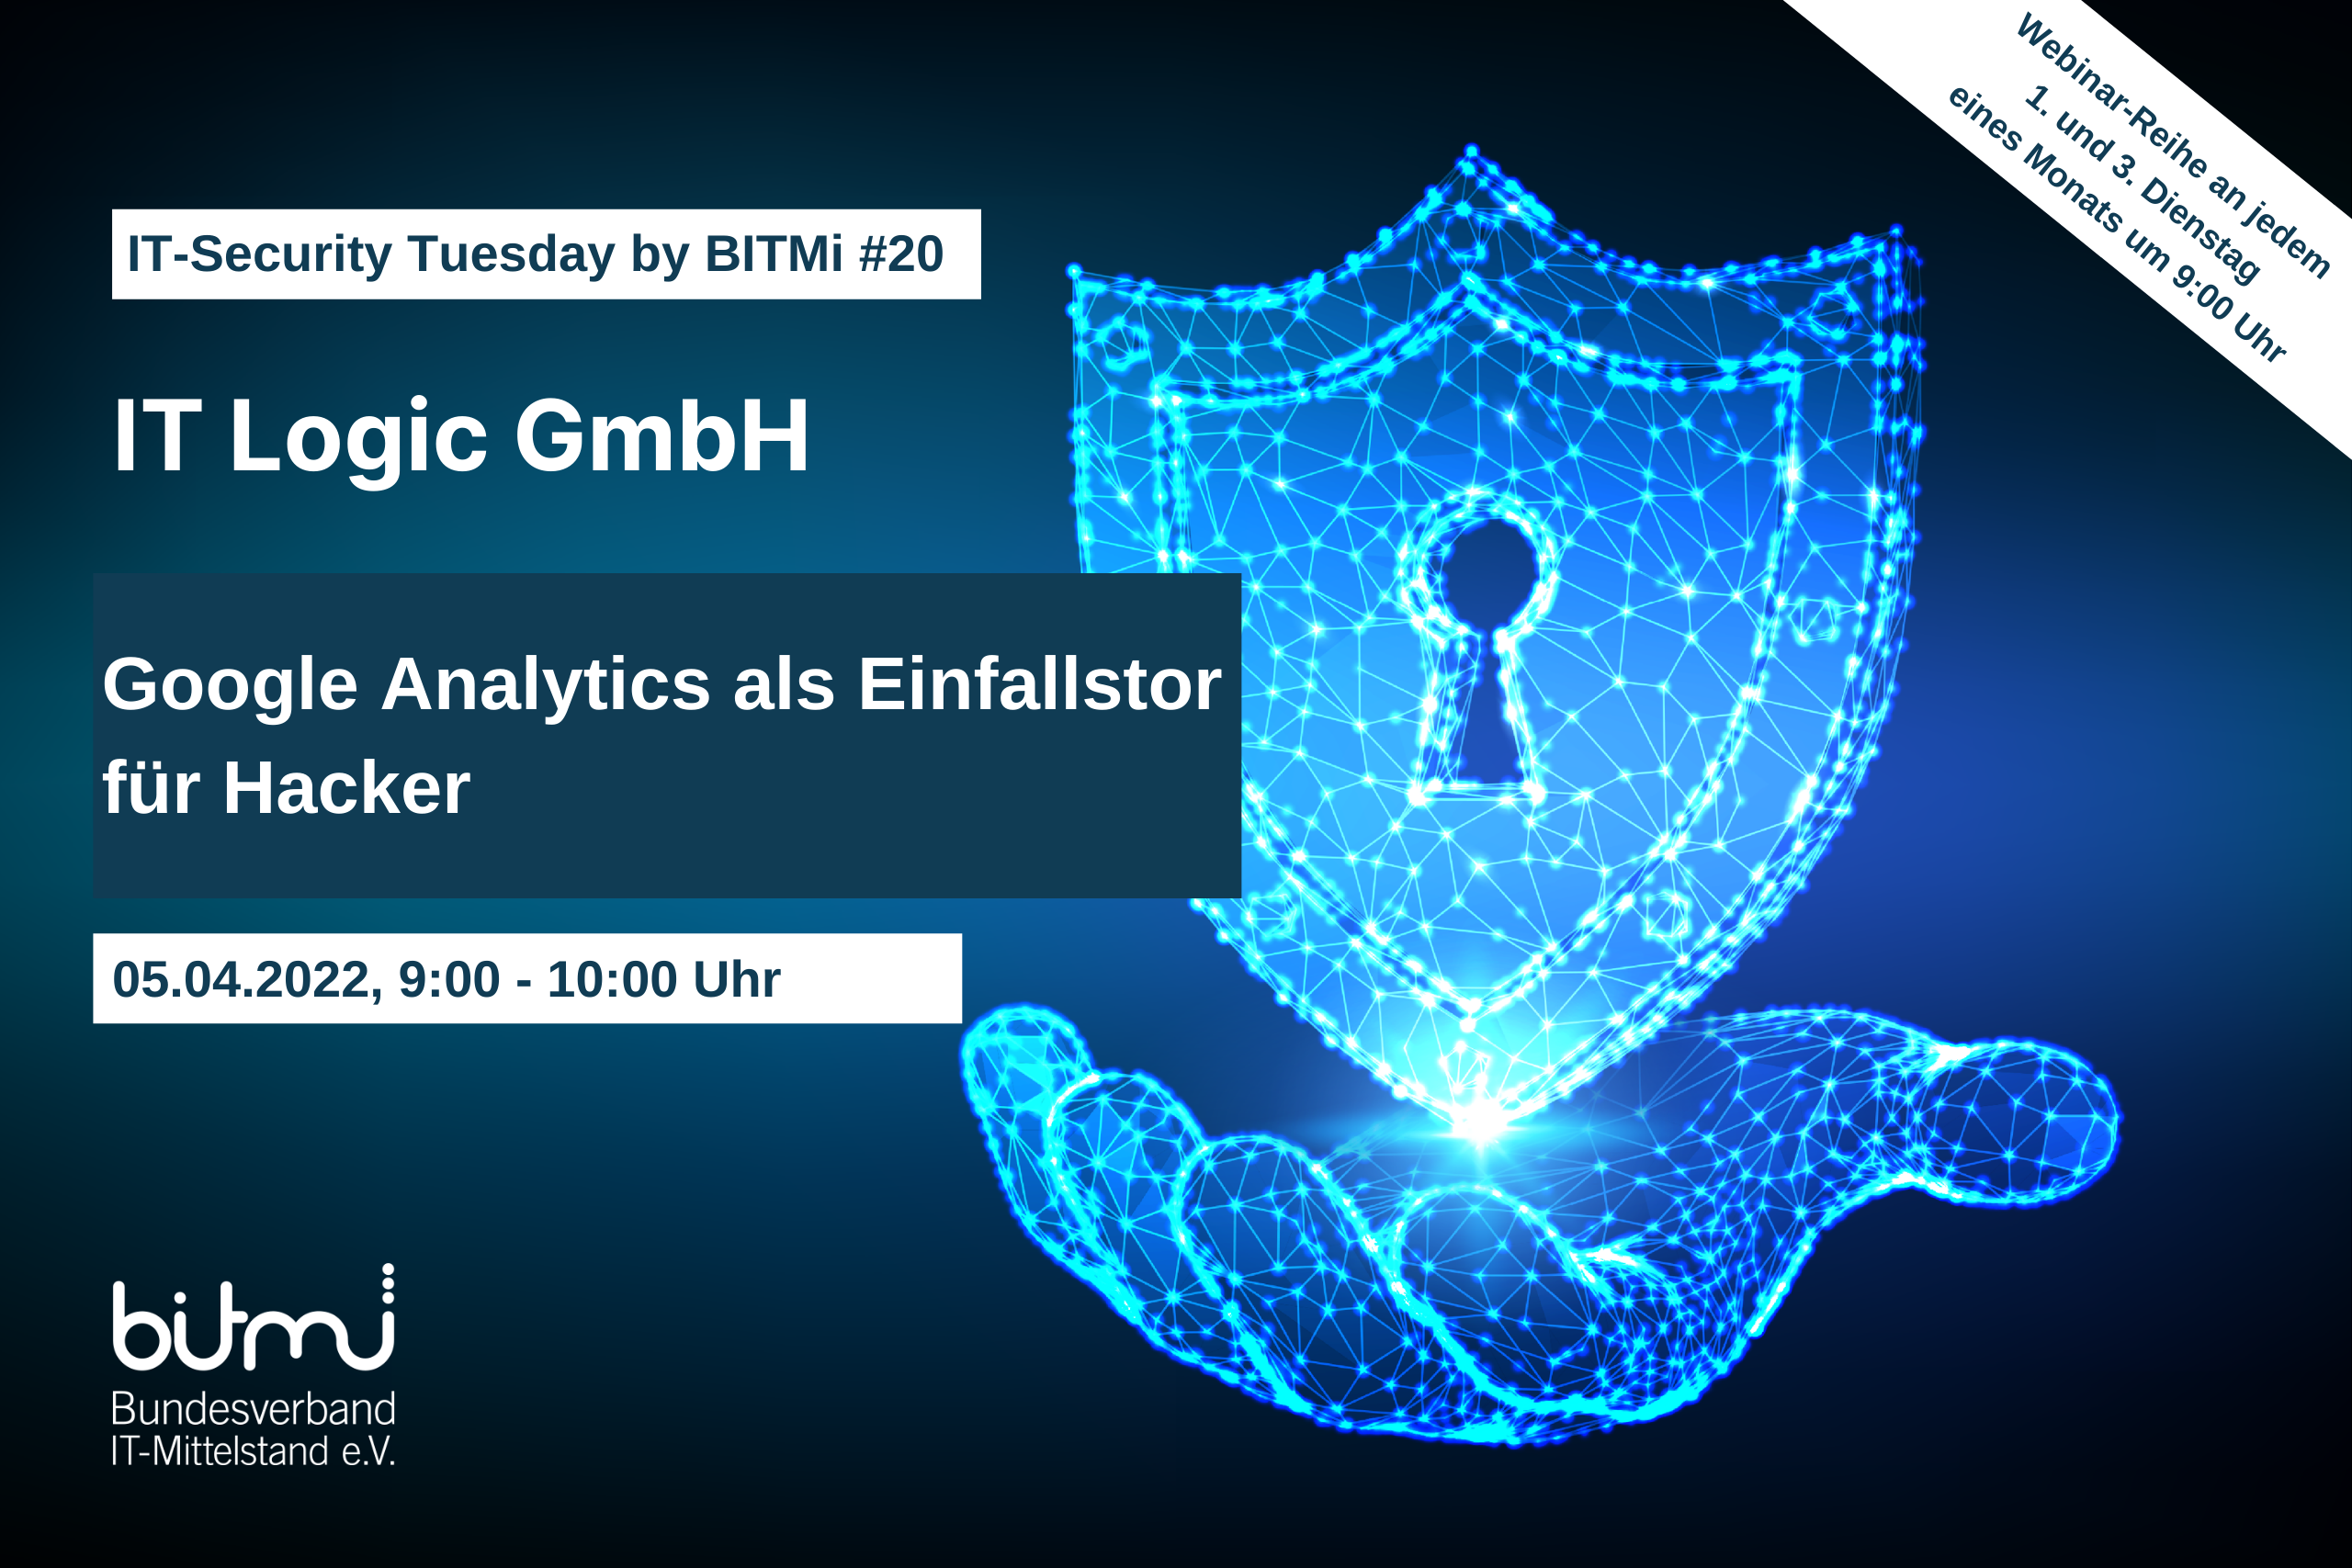 IT-Security Tuesday mit BITMi Mitglied IT Logic GmbH: Google Analytics als Einfallstor für Hacker